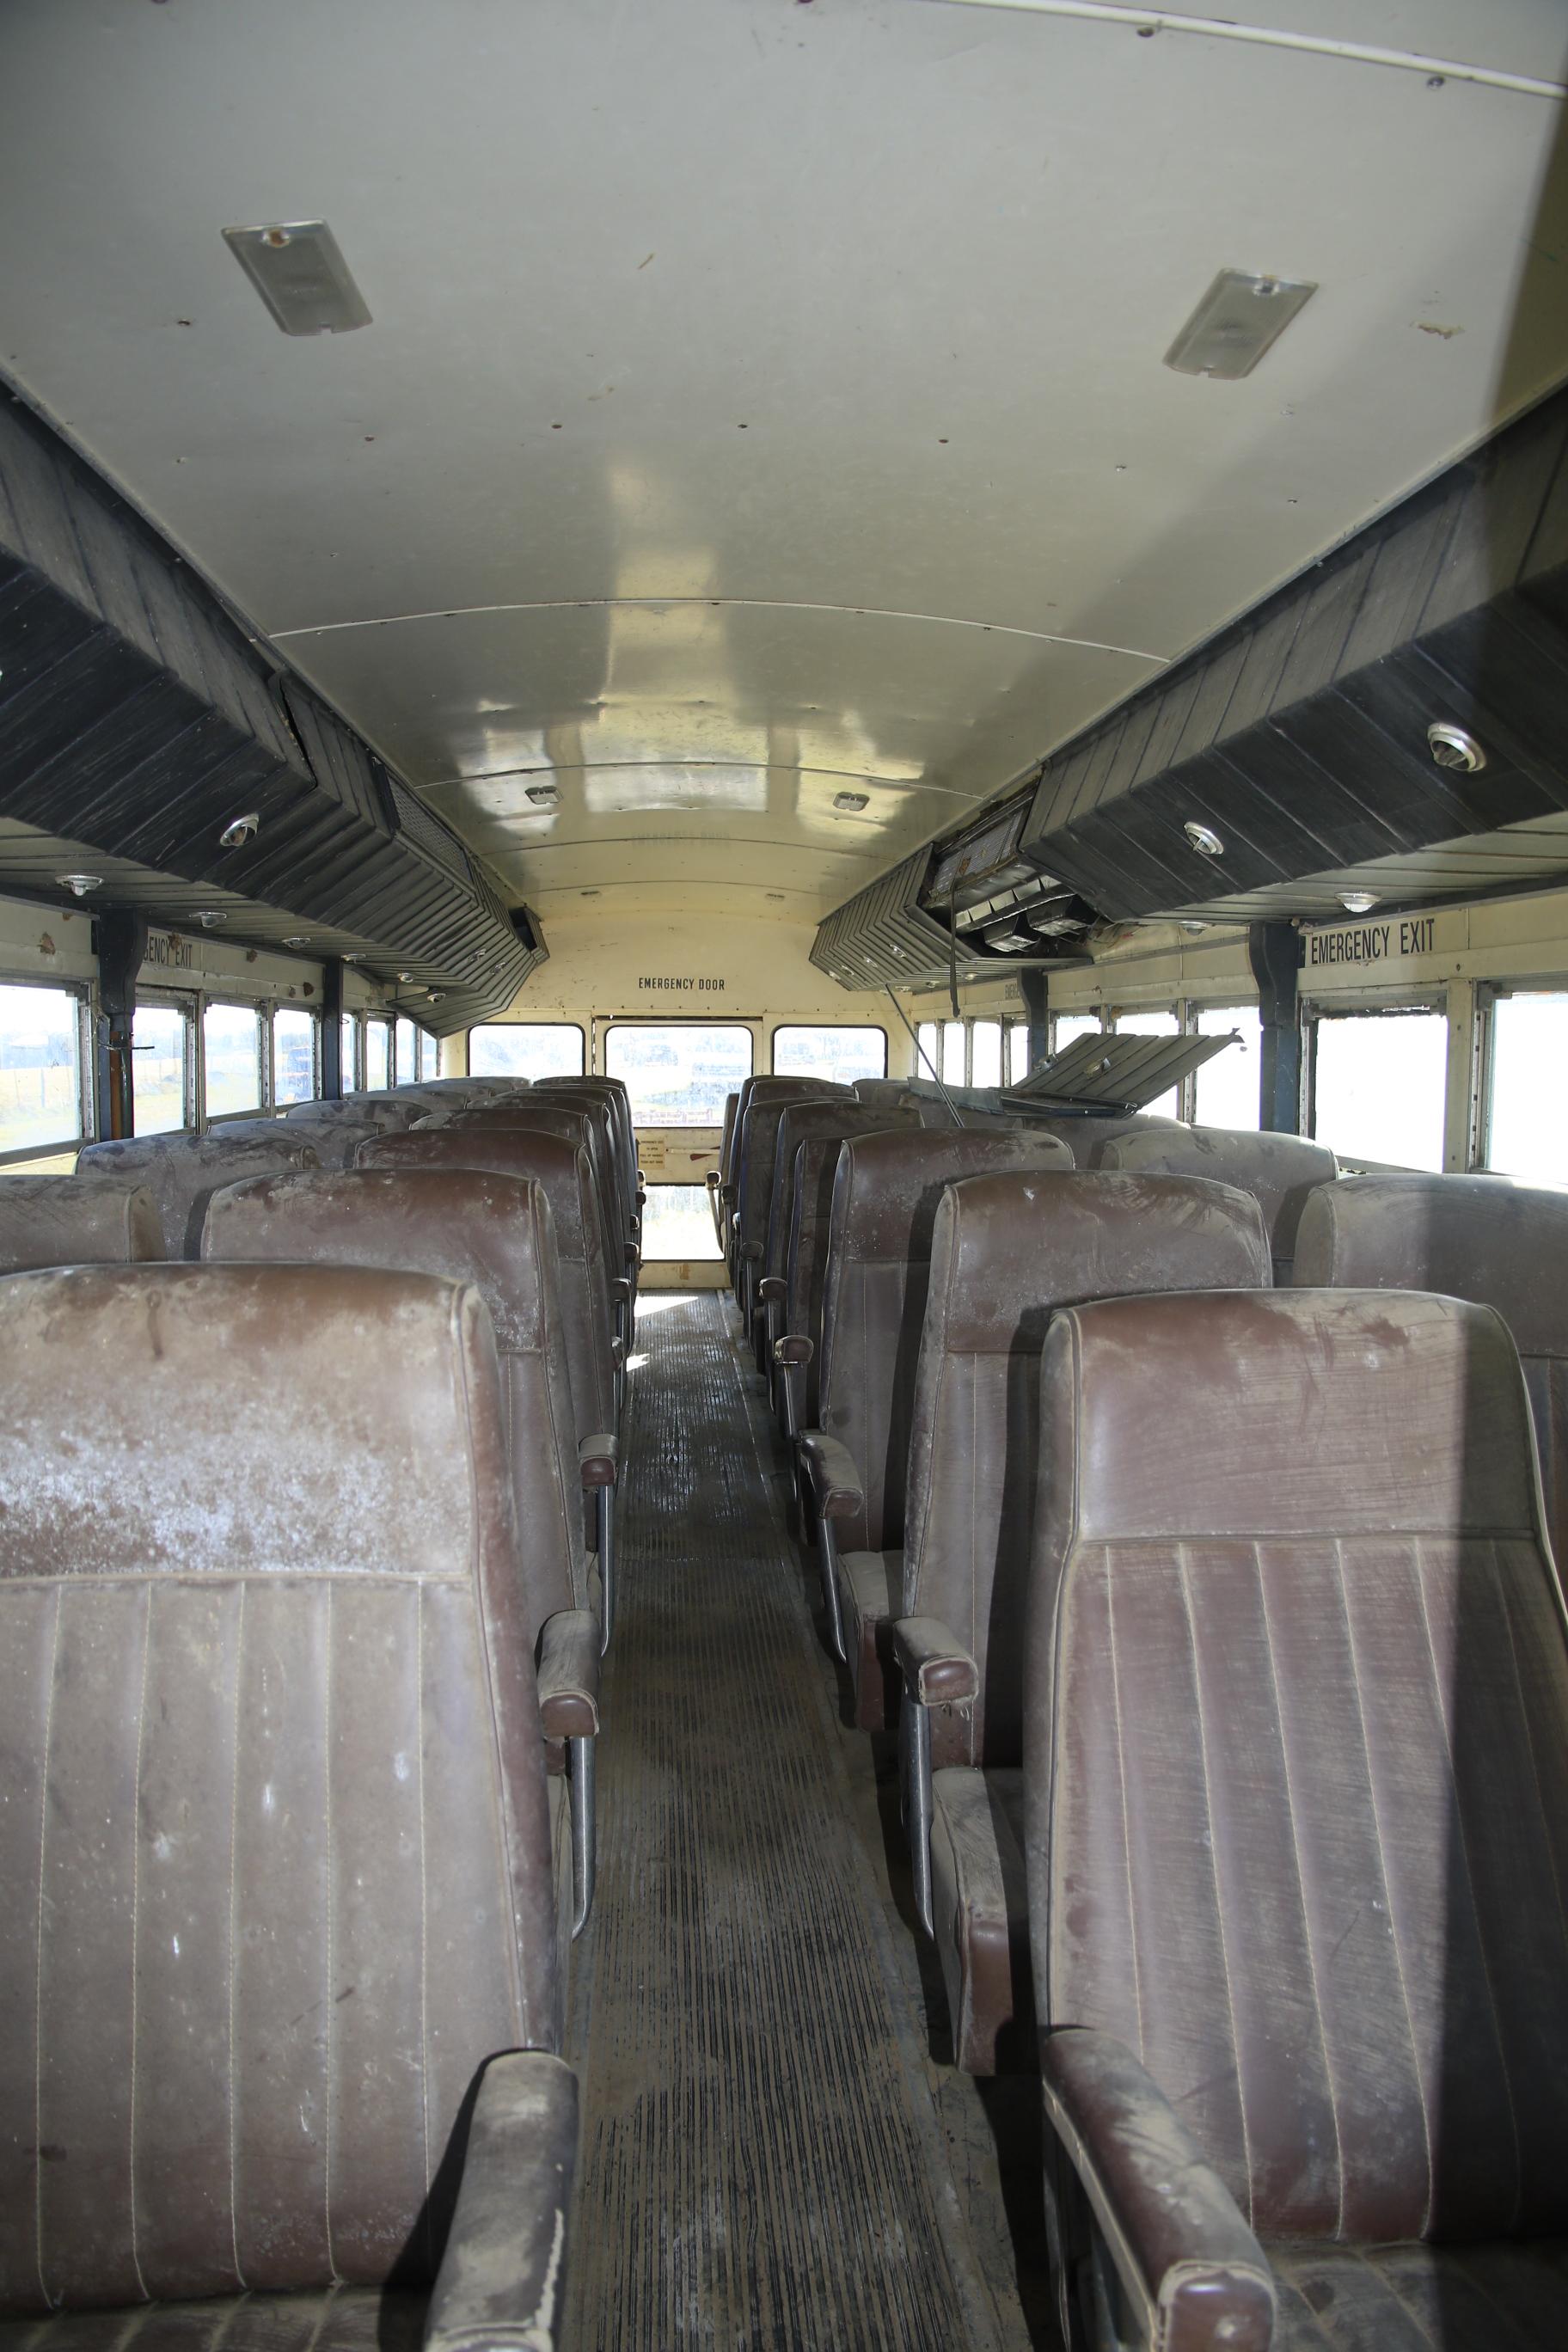 1975 CHEVY WAYNE SCHOOL BUS